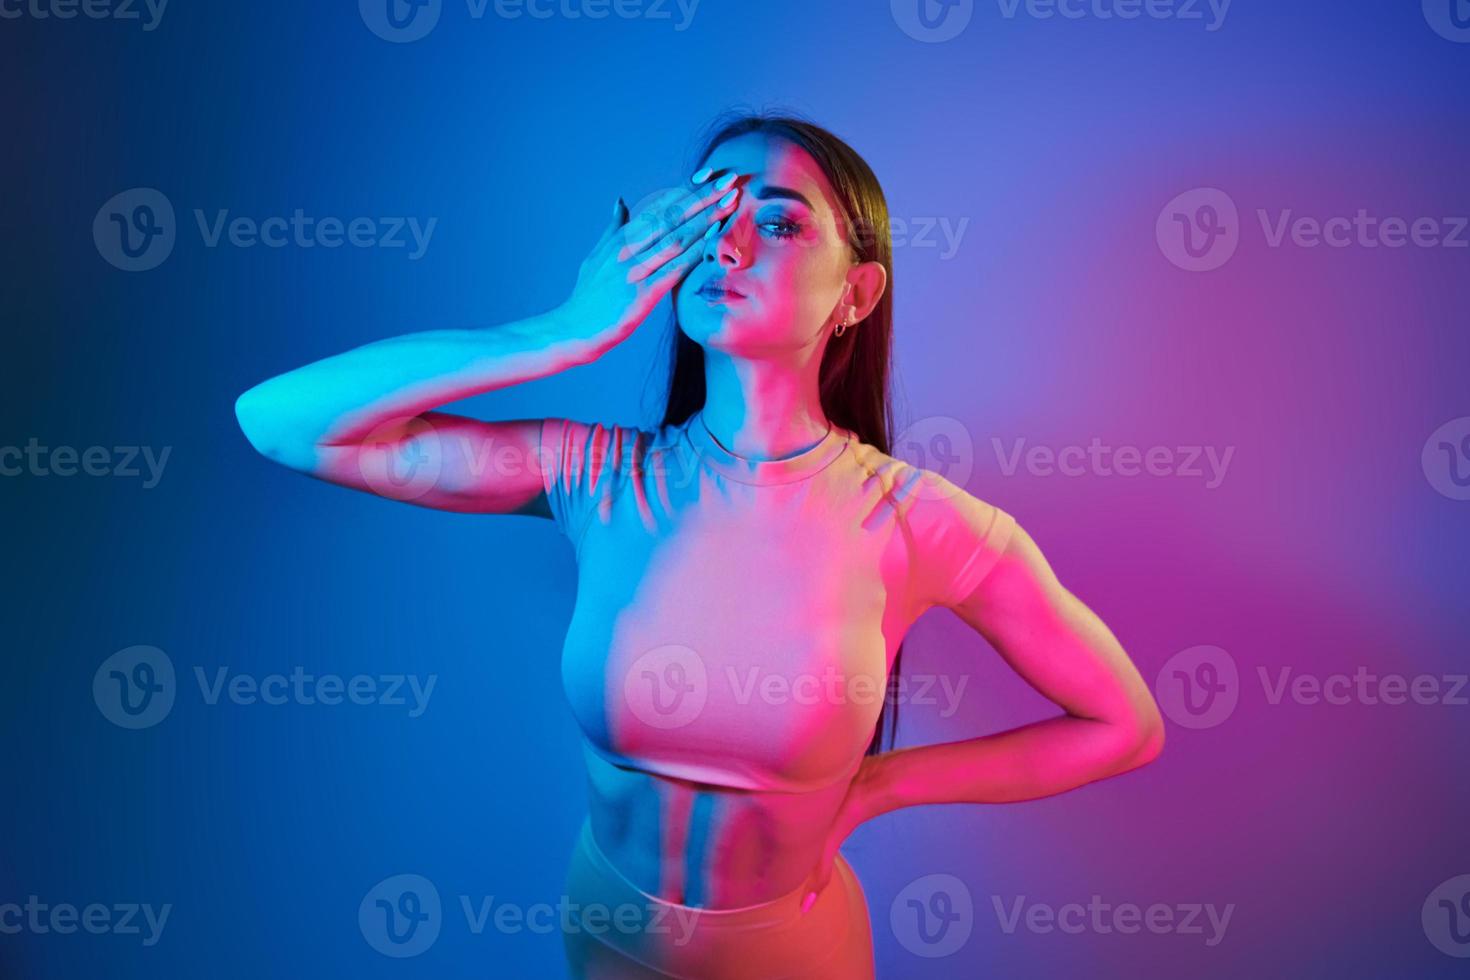 slank lichaam. modieus jong vrouw staand in de studio met neon licht foto